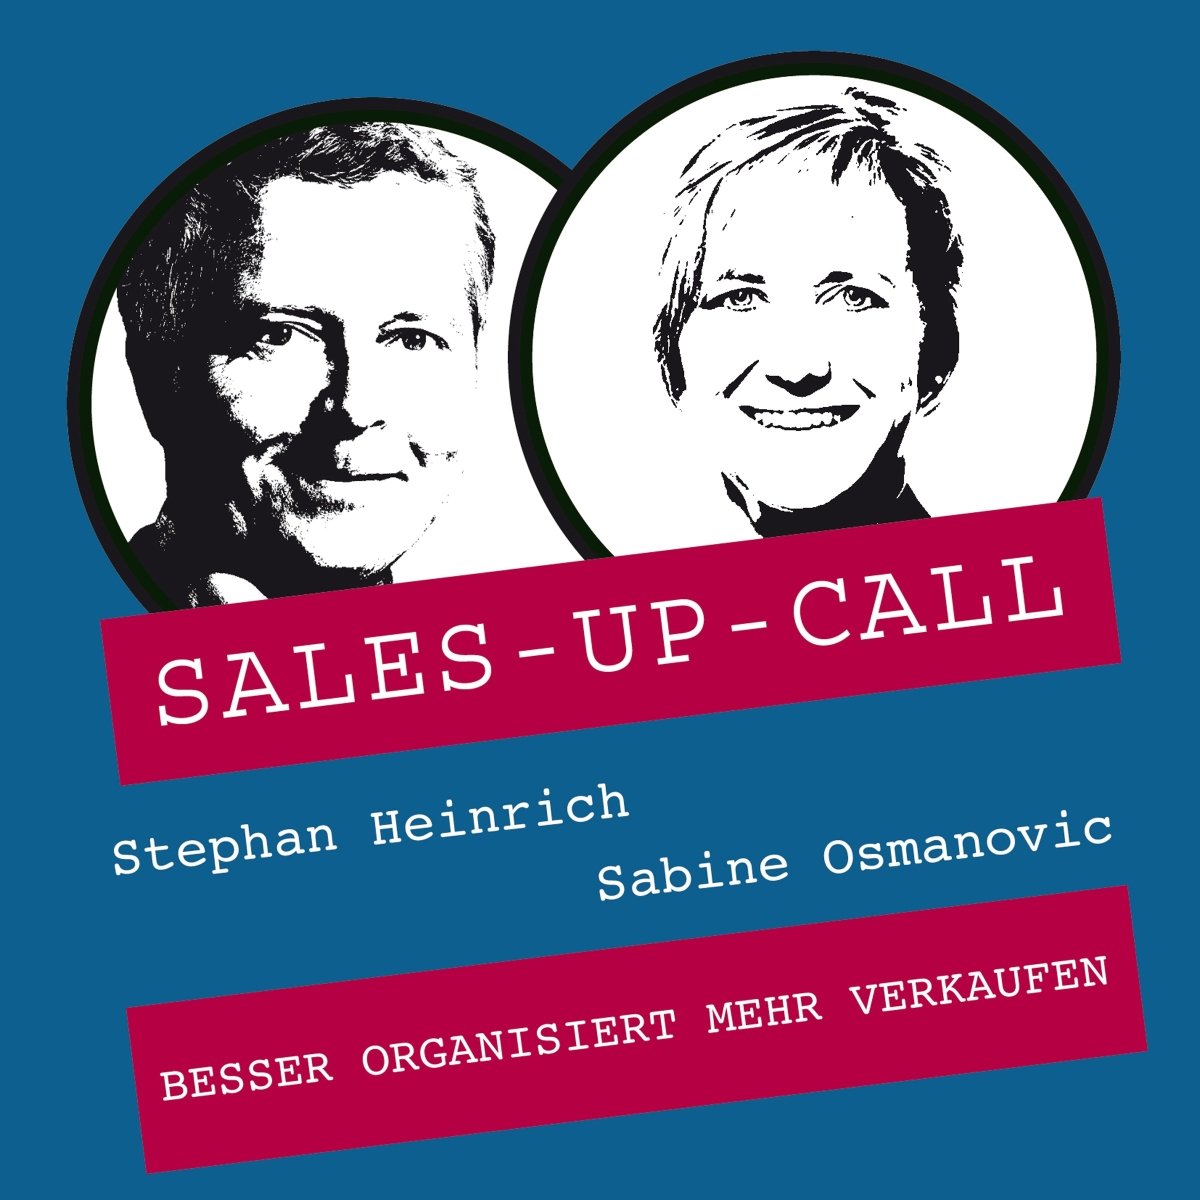 Besser organisiert mehr verkaufen - Sales-up-Call - Stephan Heinrich